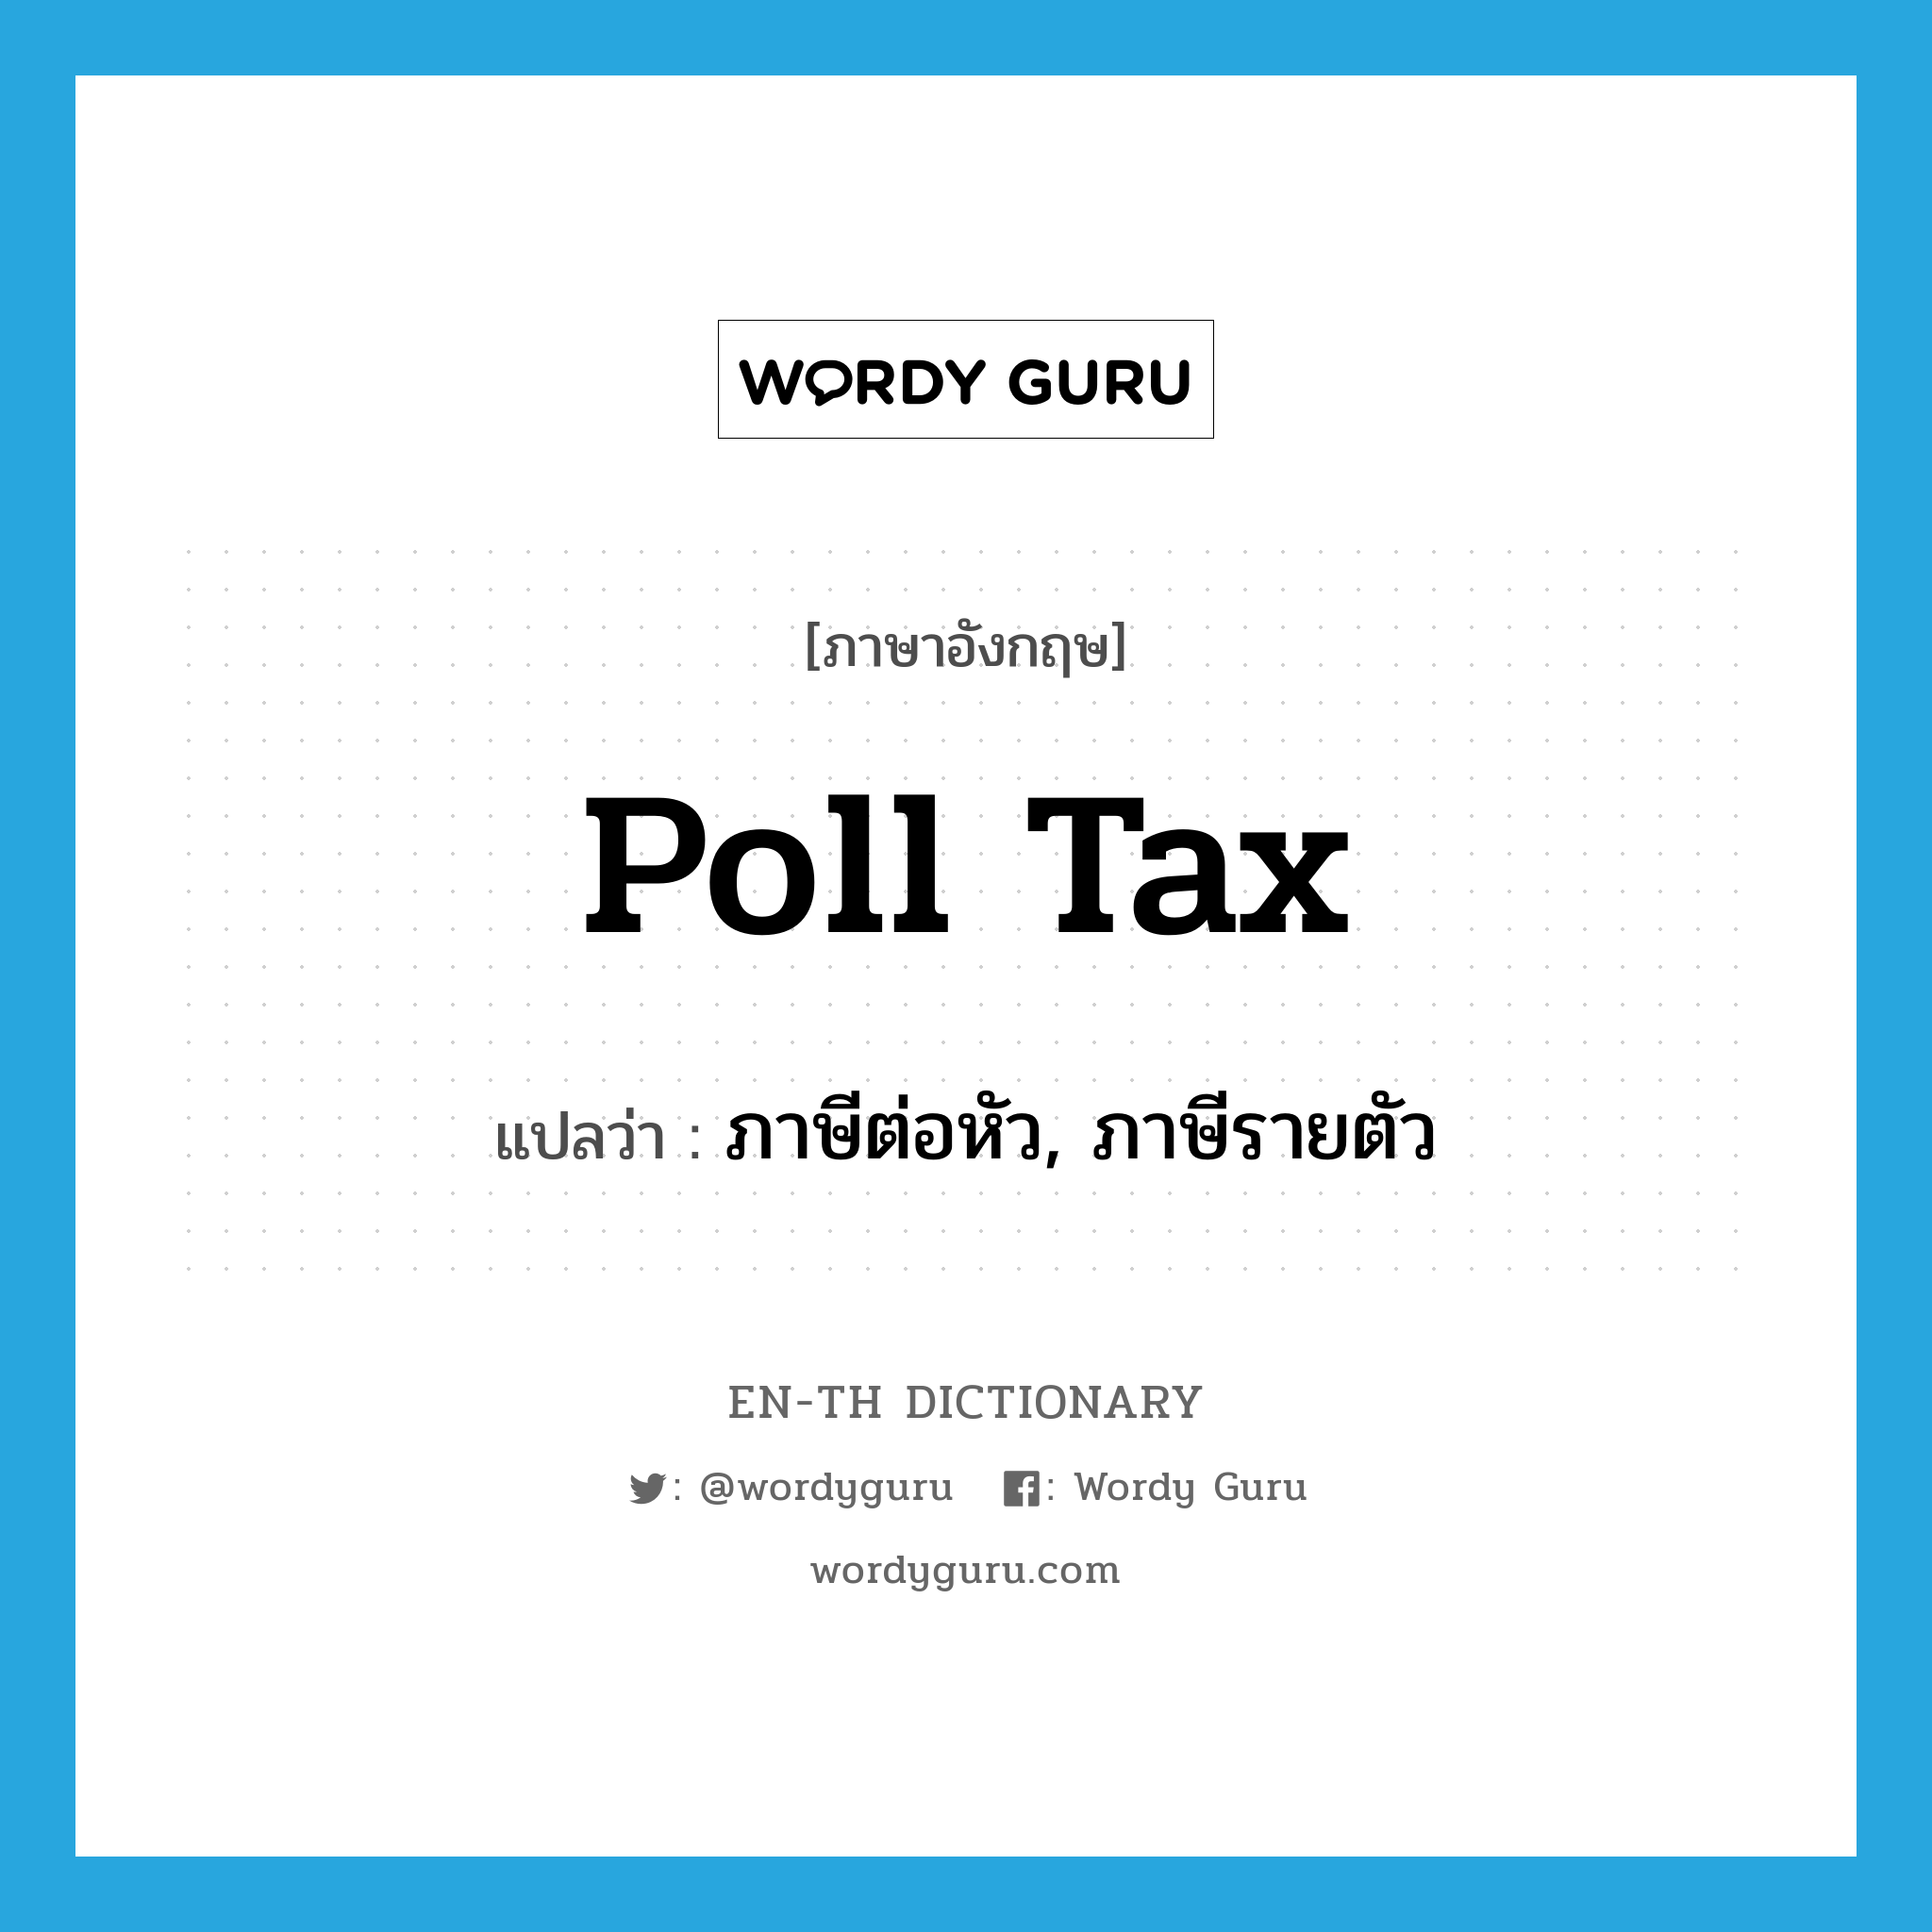 poll tax แปลว่า?, คำศัพท์ภาษาอังกฤษ poll tax แปลว่า ภาษีต่อหัว, ภาษีรายตัว ประเภท N หมวด N